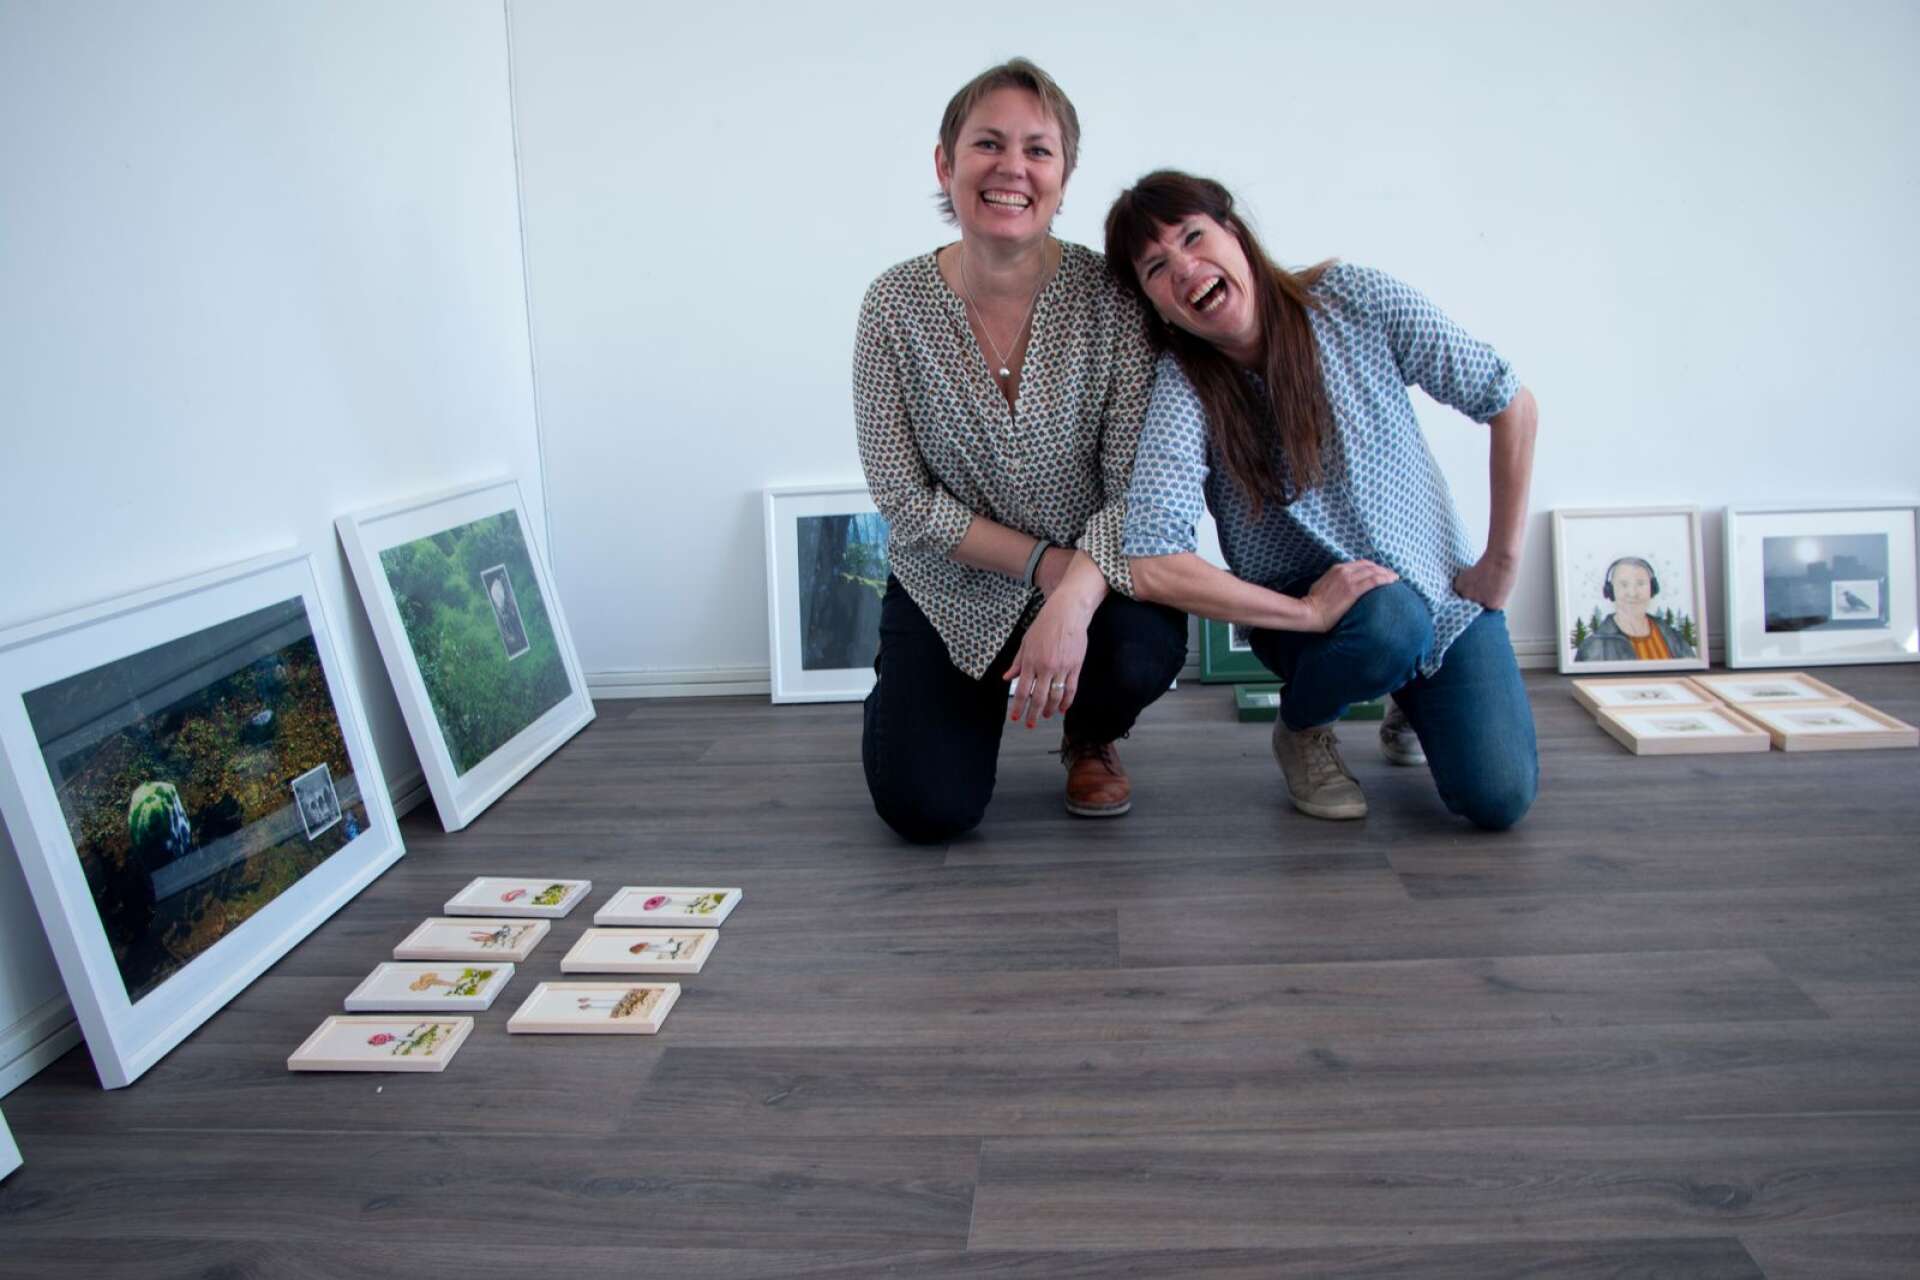 Vännerna Erika Broman och Annica Berglund ställer ut på Galleri Konst i Karlstad med vernissage på fredag. Den röda tråden bland deras verk är naturen som de båda tycker mycket om och visar olika sidor av i sin konst.